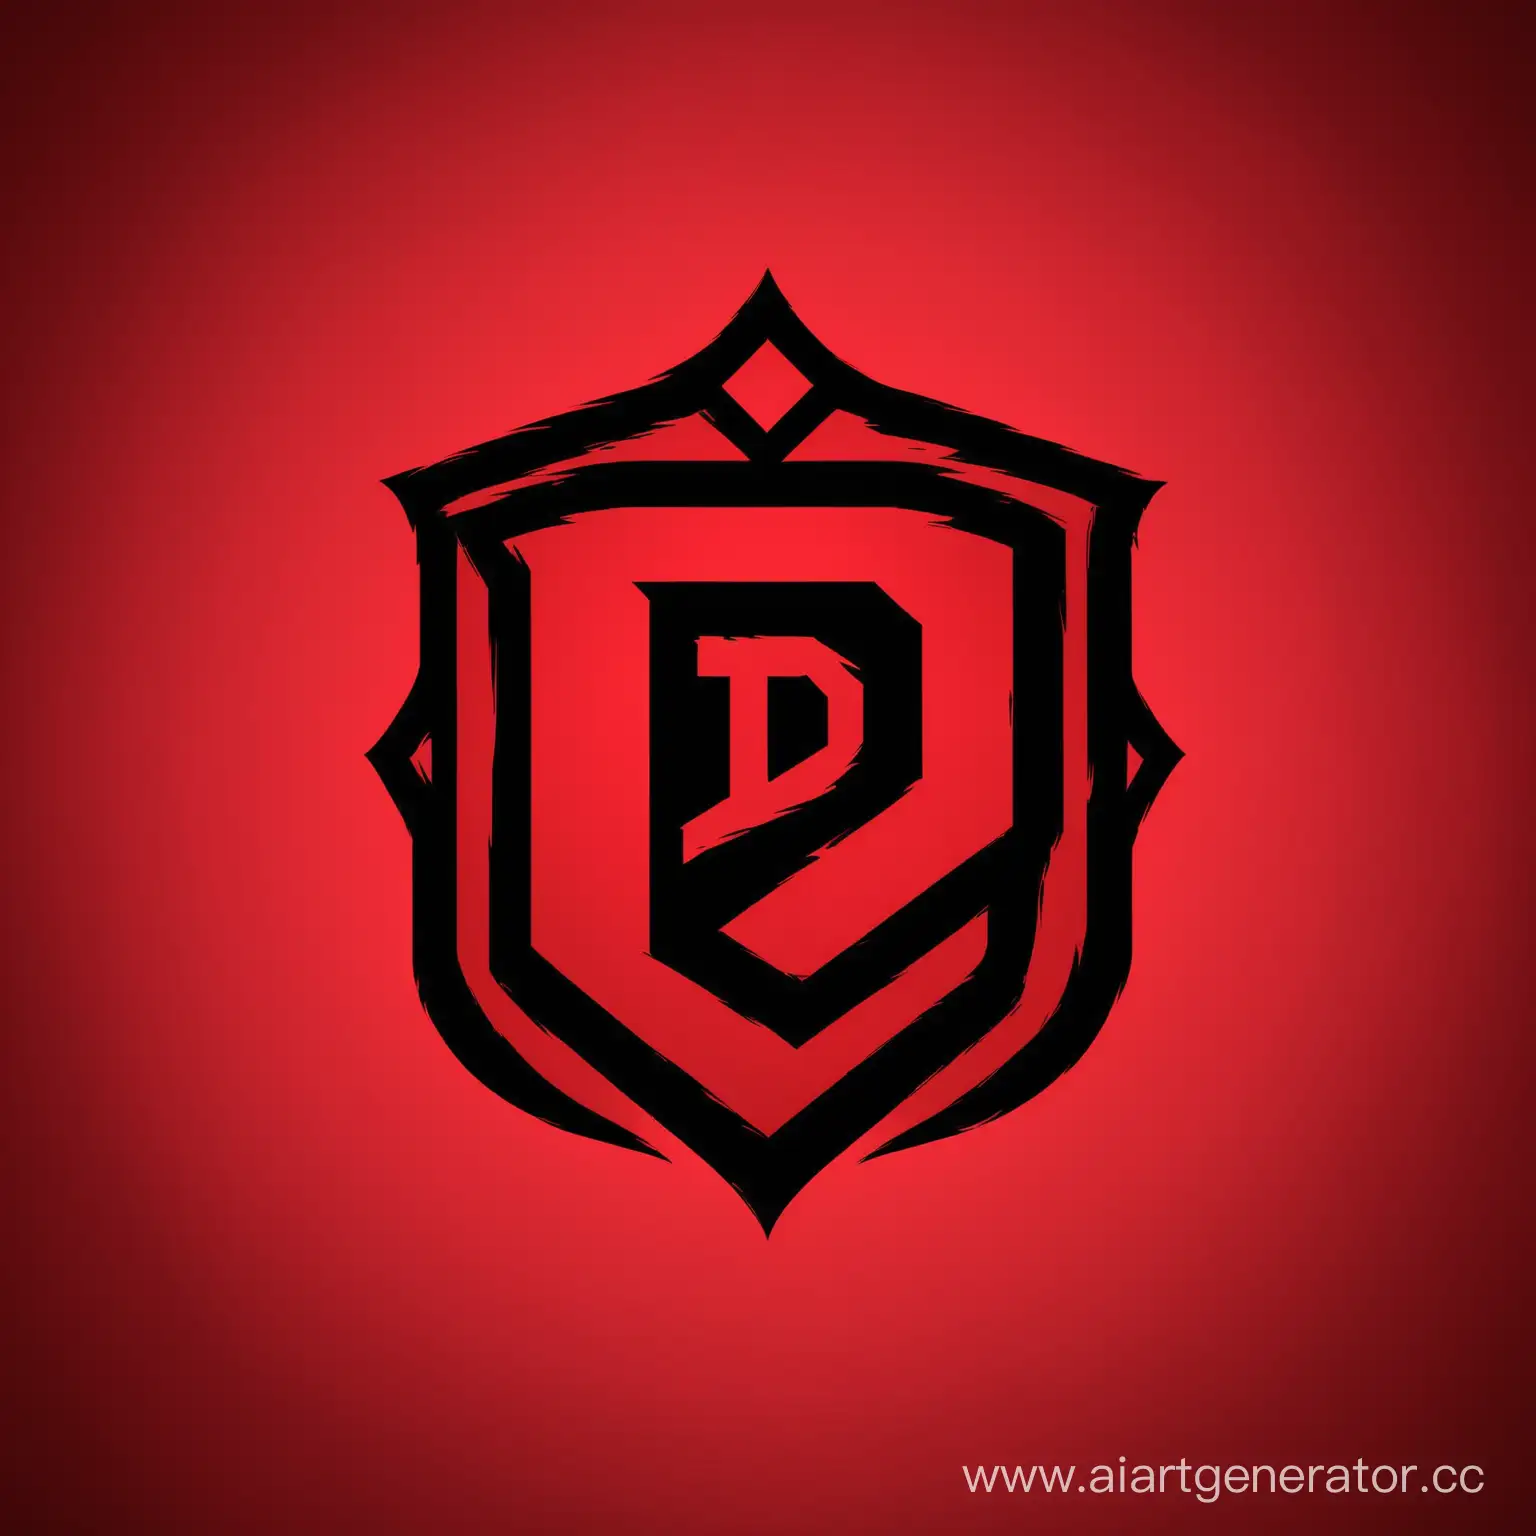 Топ киберспортивный логотип фон красный с черной буквой D по середине 